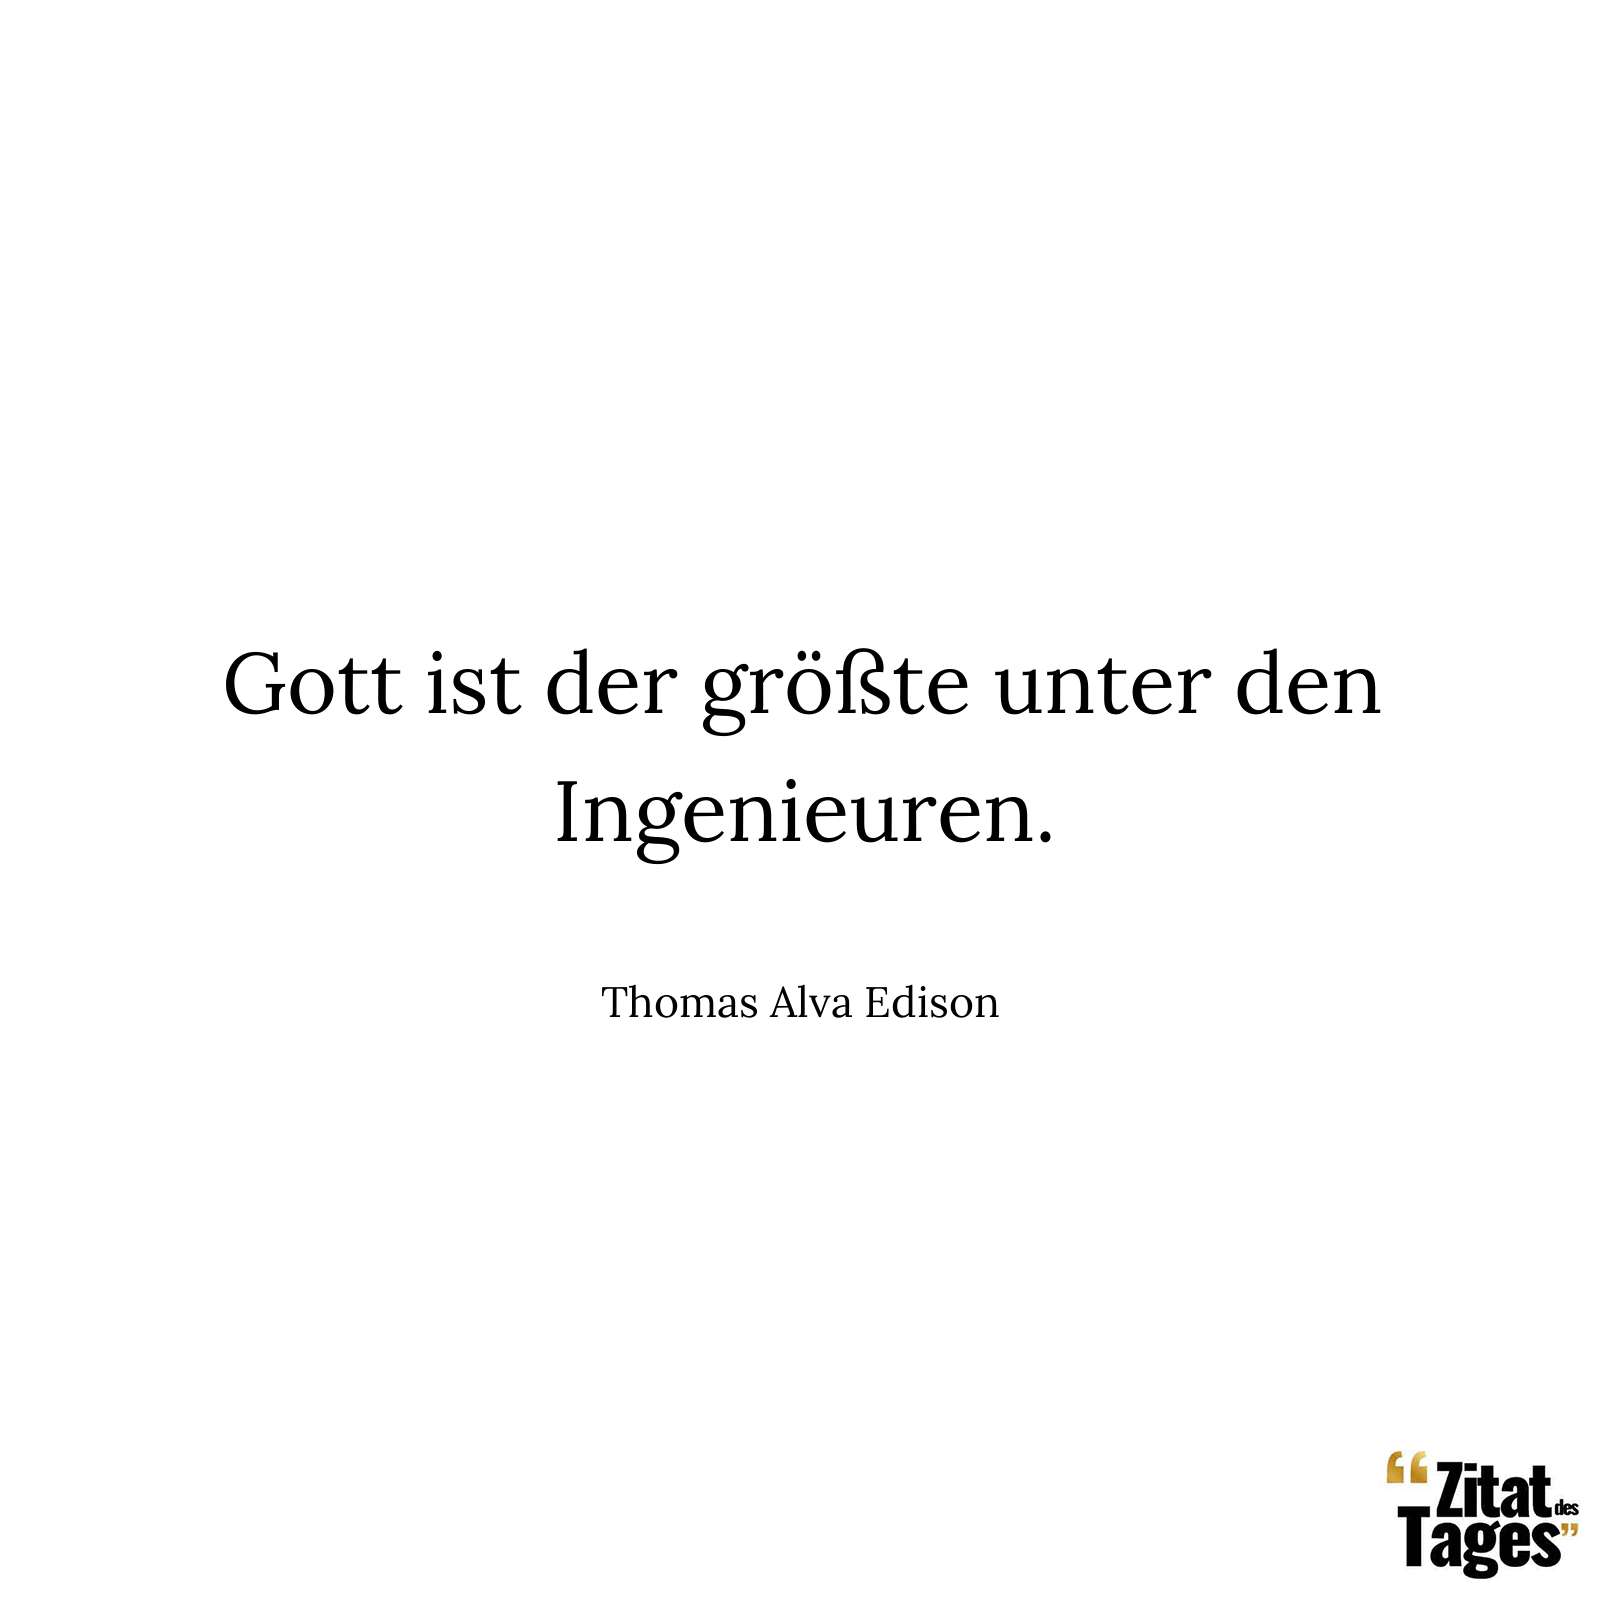 Gott ist der größte unter den Ingenieuren. - Thomas Alva Edison